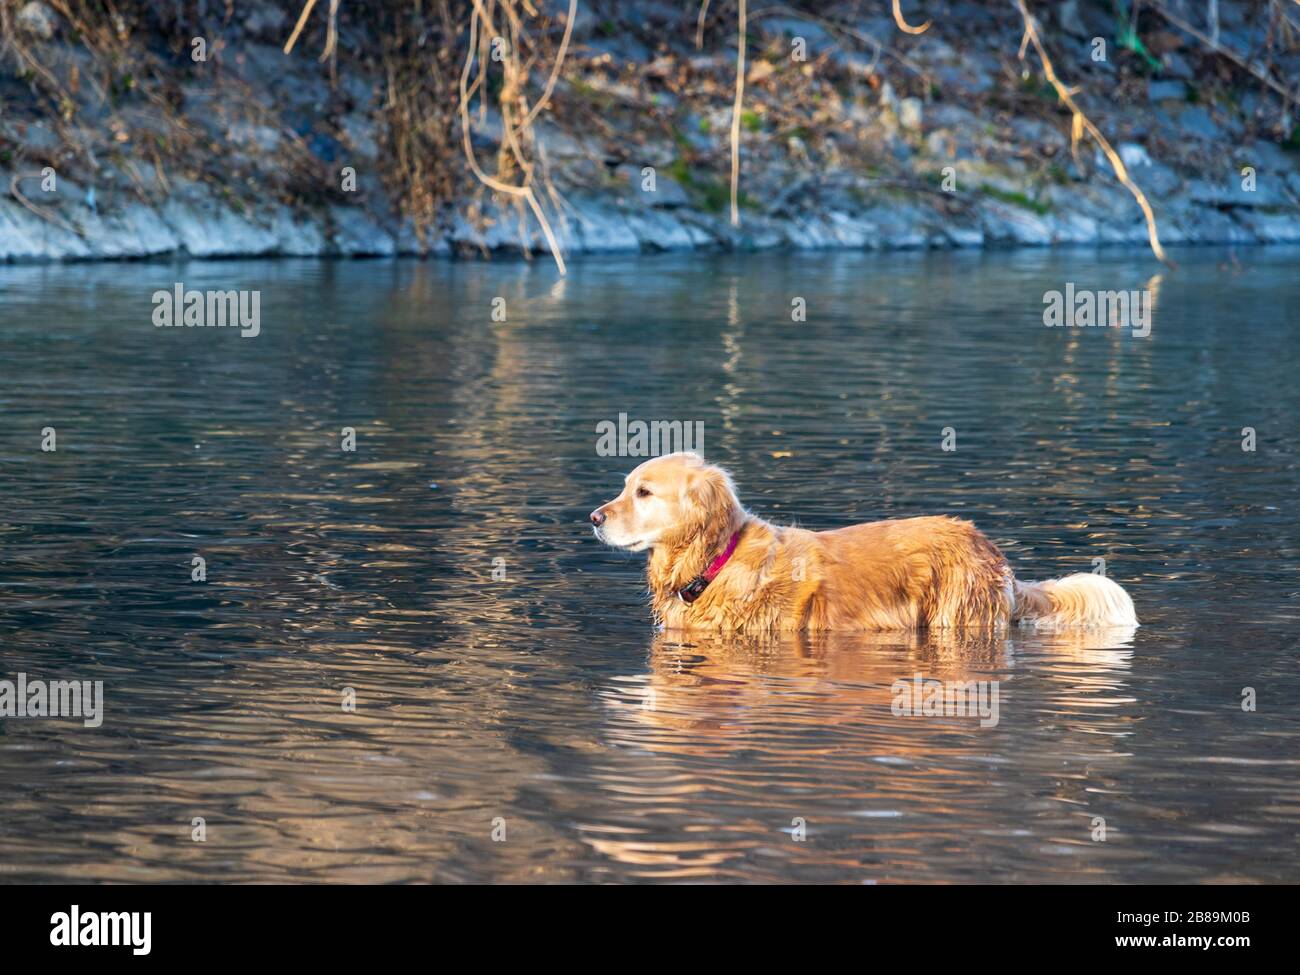 Hund im schmutzigen Wasser im Pellerina Park Stockfoto